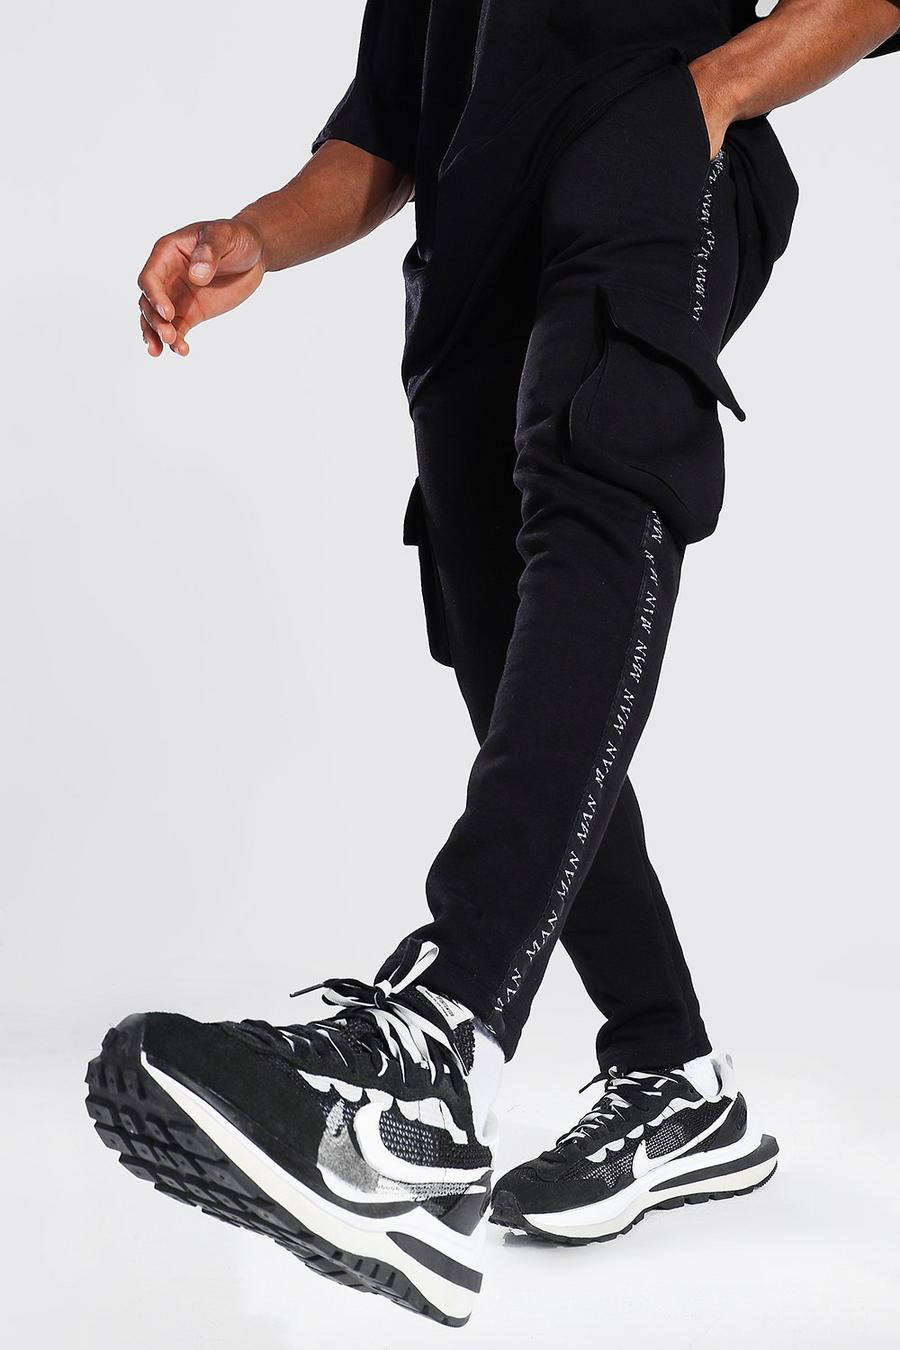 שחור מכנסי ריצה בגזרה צרה בסגנון דגמ"ח עם סרט עם כיתוב Original Man image number 1